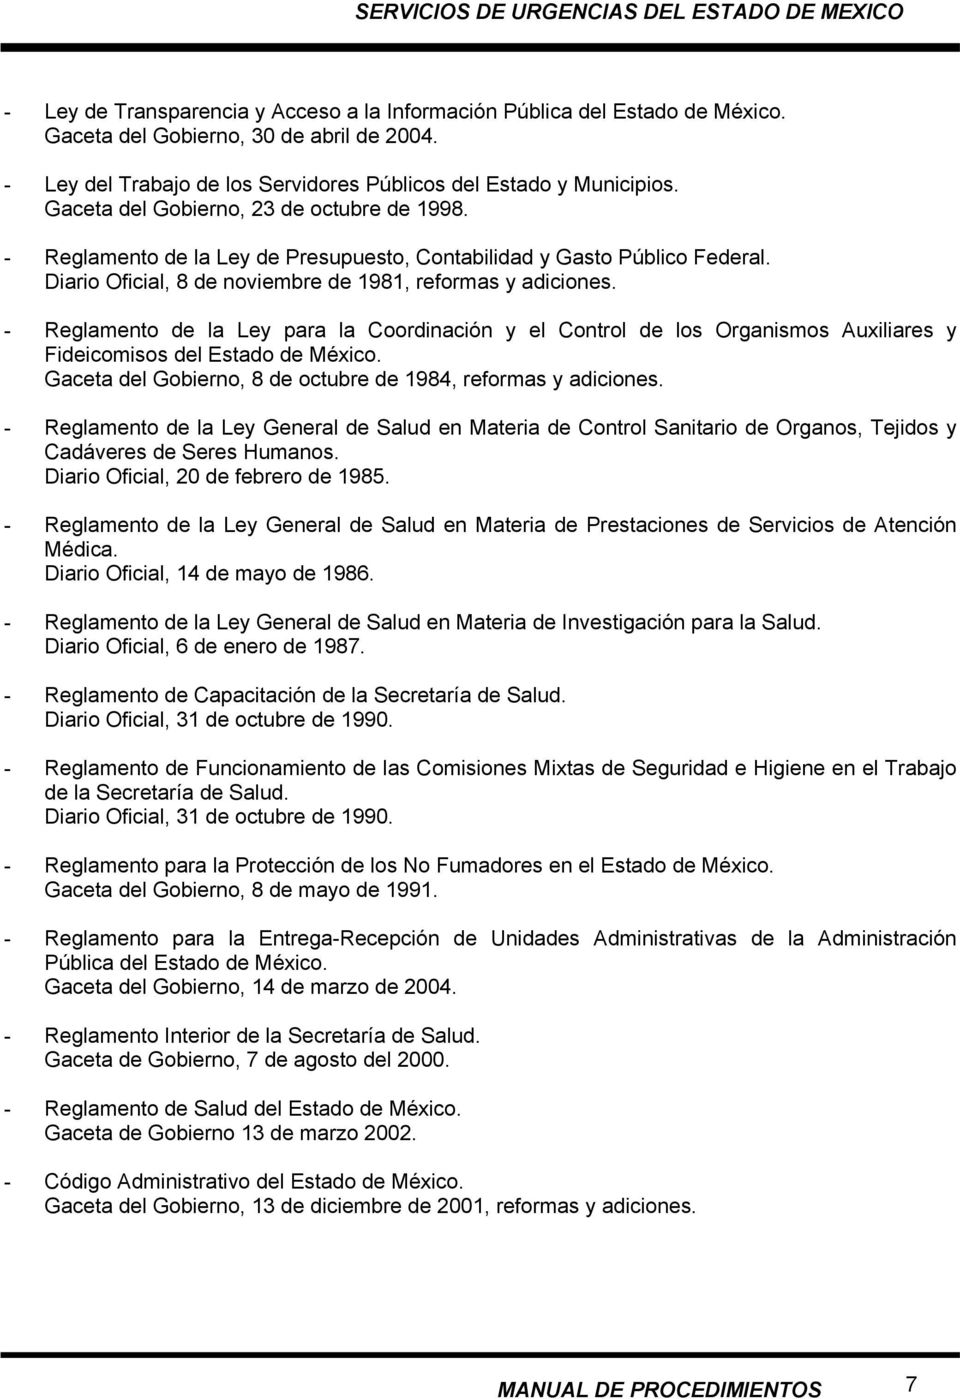 - Reglamento de la Ley para la Coordinación y el Control de los Organismos Auxiliares y Fideicomisos del Estado de México. Gaceta del Gobierno, 8 de octubre de 1984, reformas y adiciones.